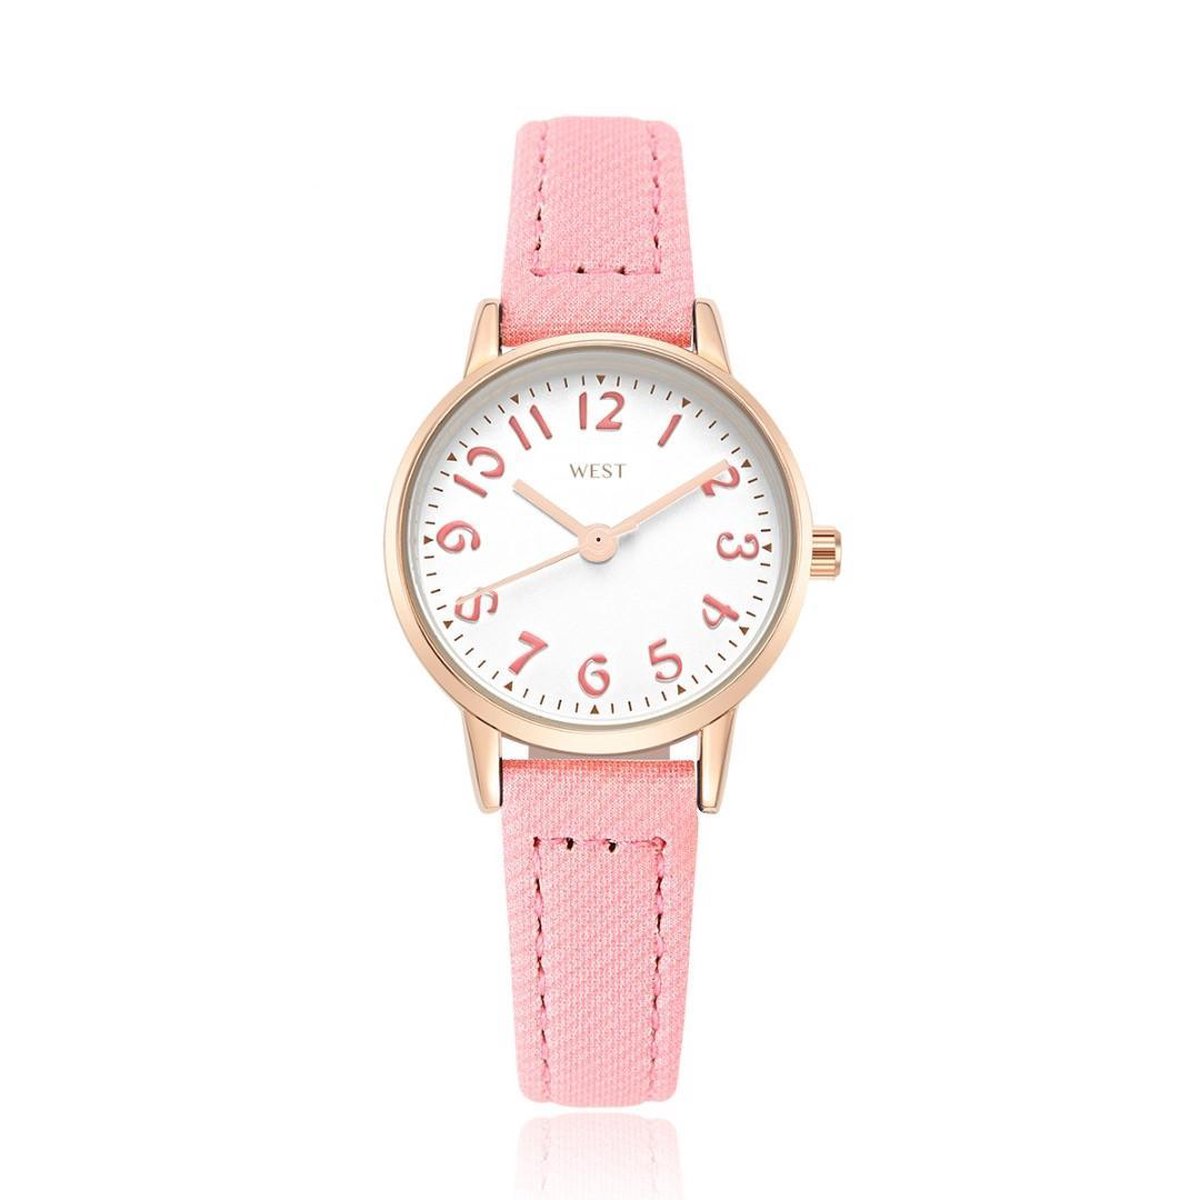 West Watch - model Rose - analoog kinder- tiener horloge - Ø 23 mm - roze-rosé